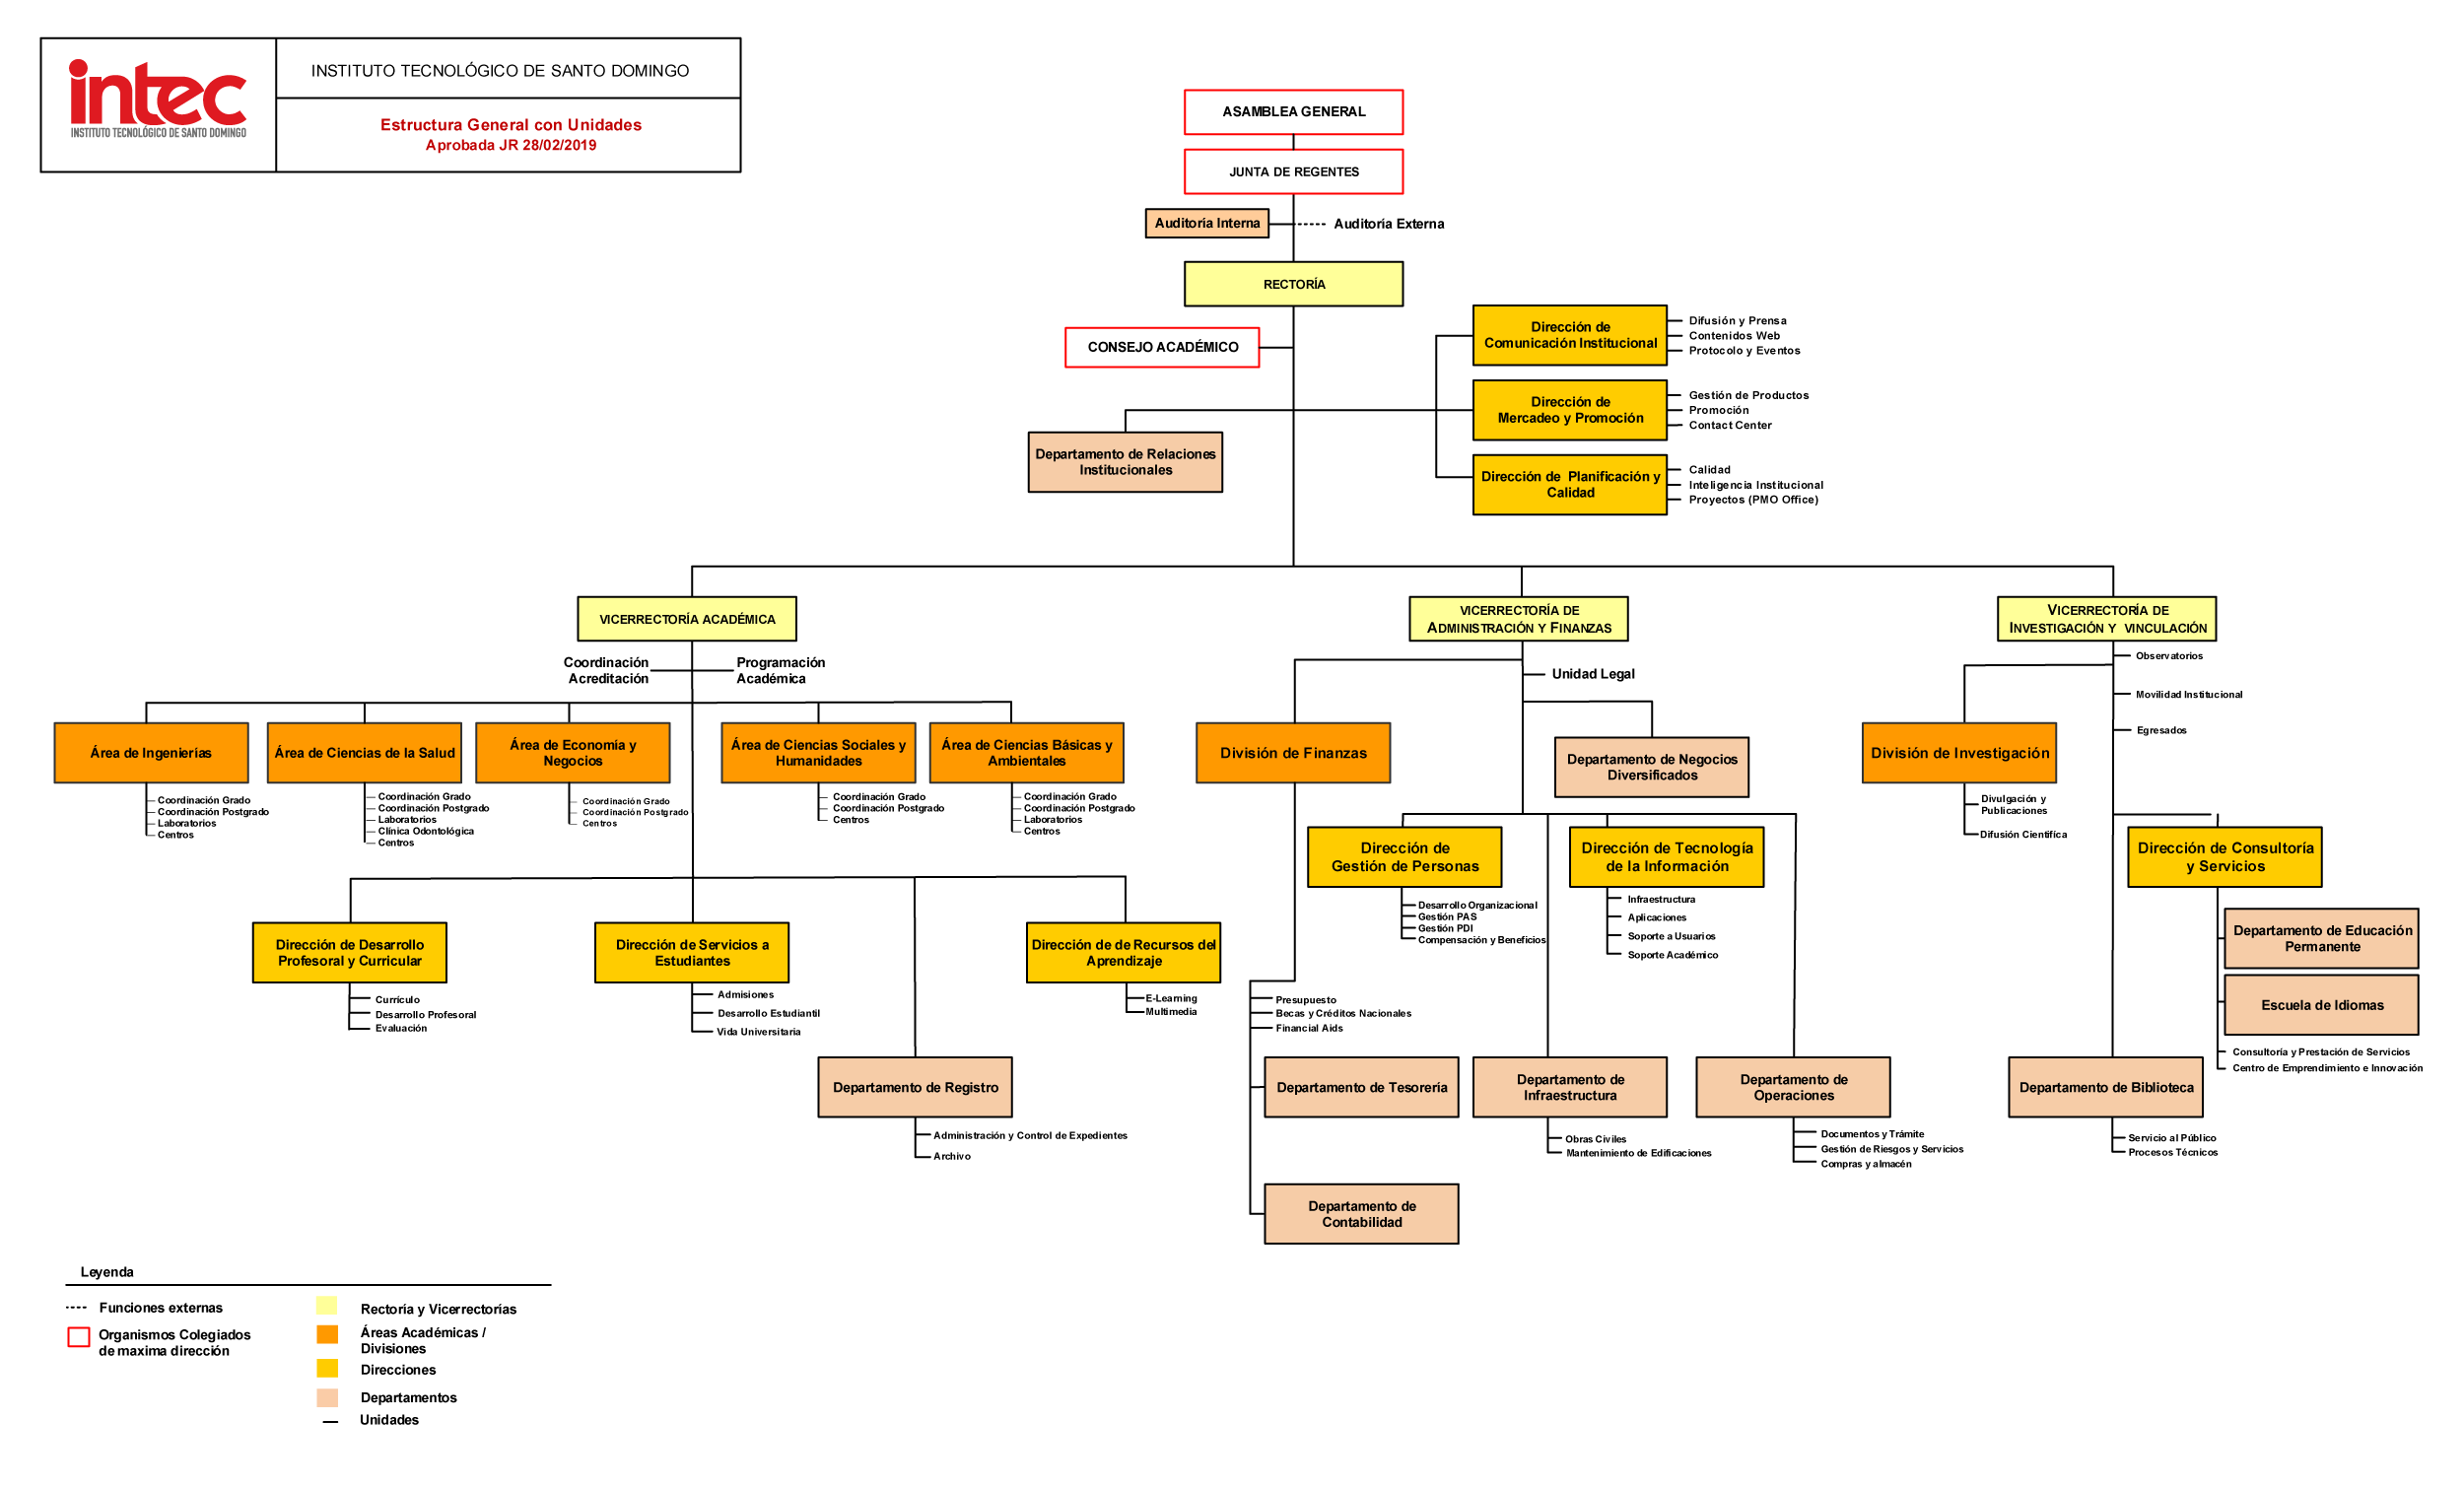 General-Structure-Organogram-2019-9c647611 Instituto Tecnológico de Santo Domingo - Institutional organization chart